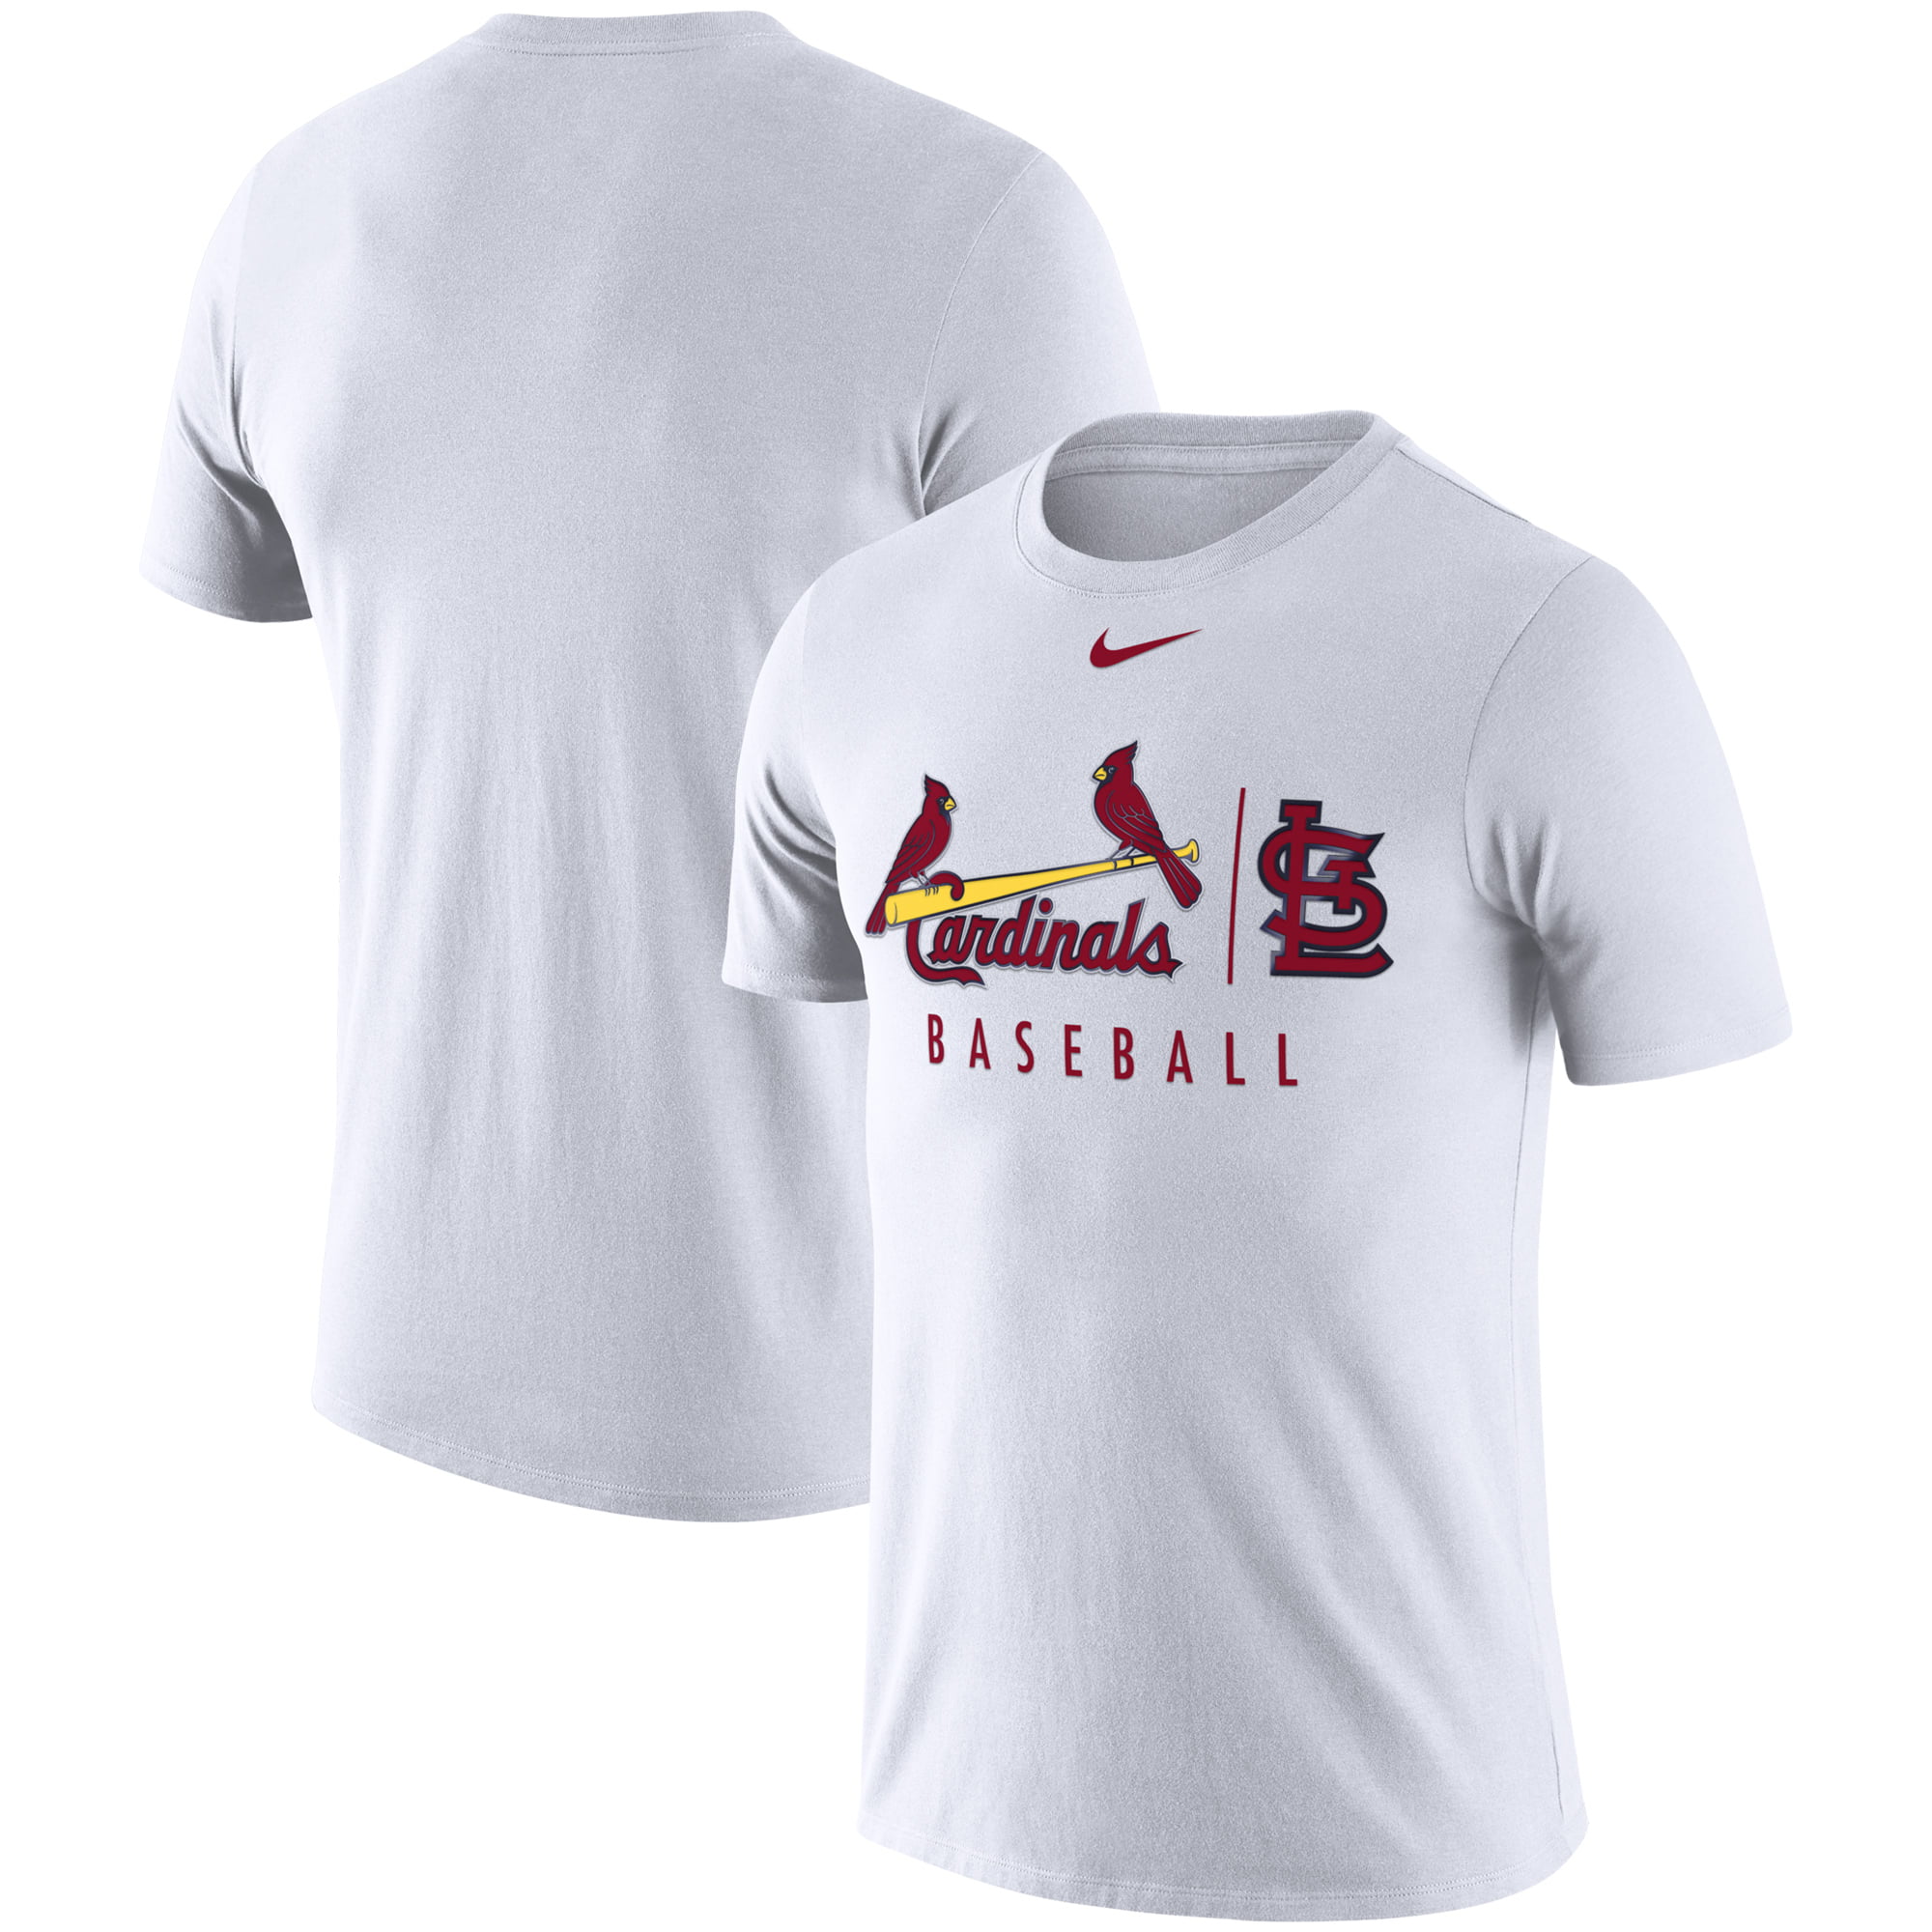 St. Louis Cardinals Nike MLB Practice T-Shirt - White - www.speedy25.com - www.speedy25.com